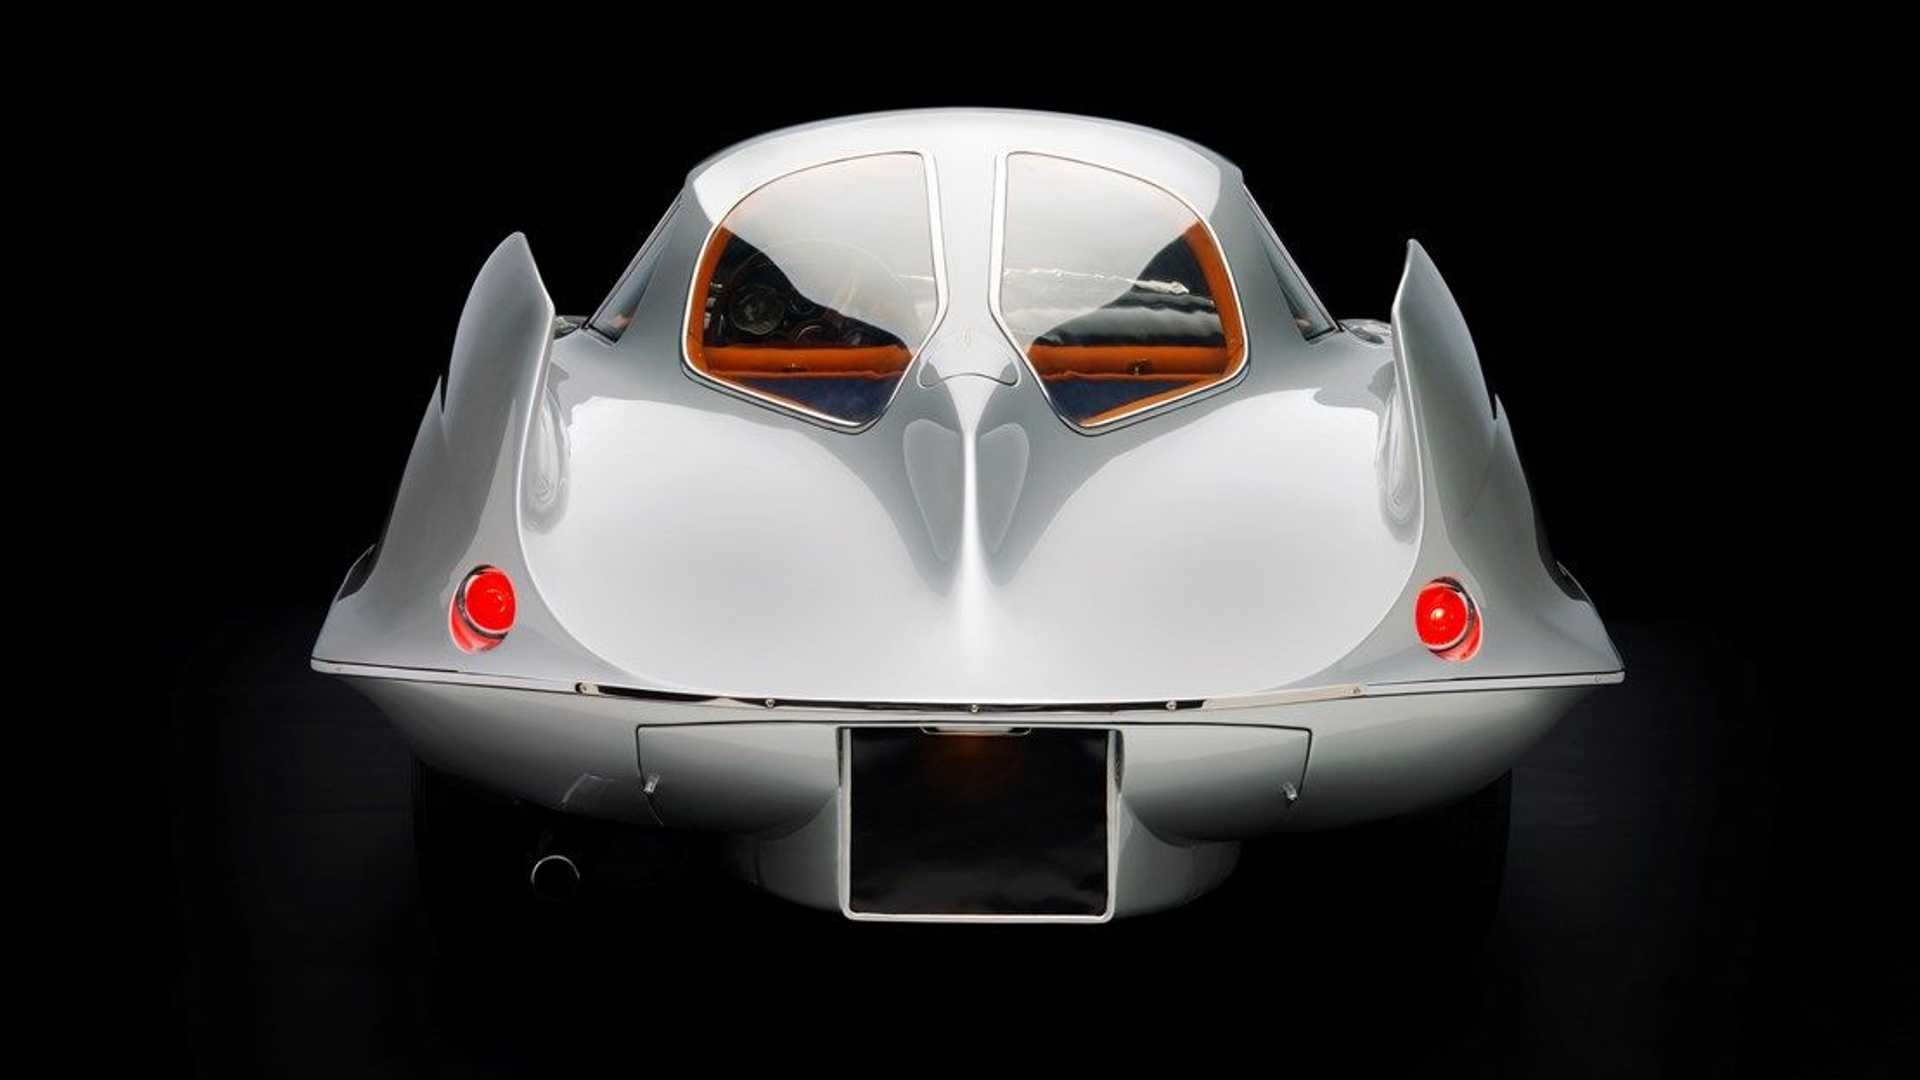 نمای عقب خودروی مفهومی آلفا رومئو / Alfa Romeo B.A.T. Concept Car با رنگ سفید